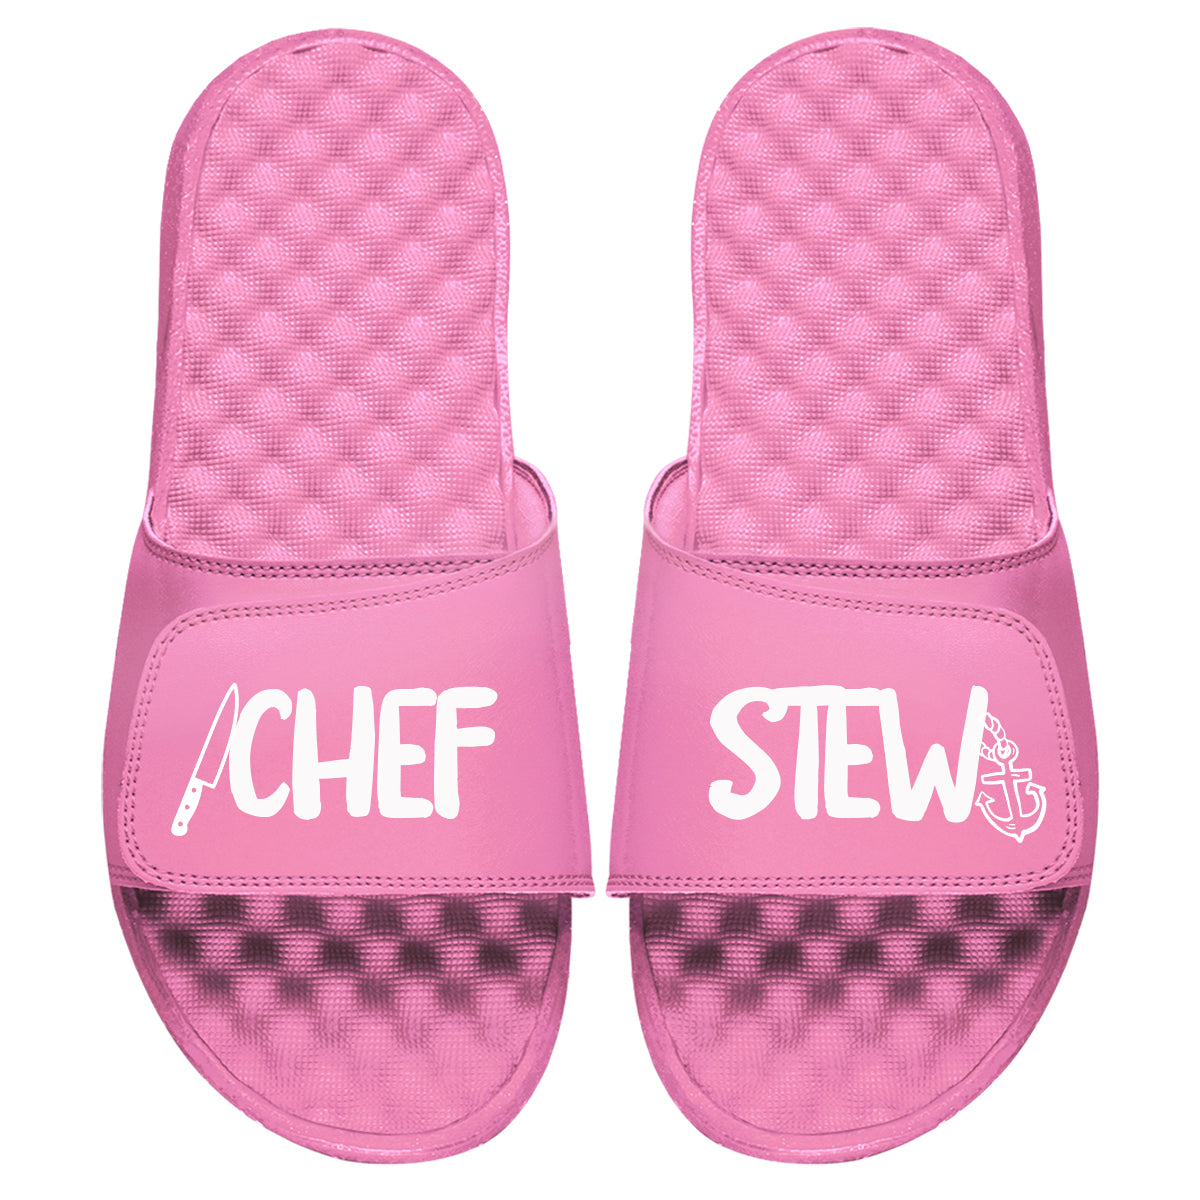 Chef Stew Slides